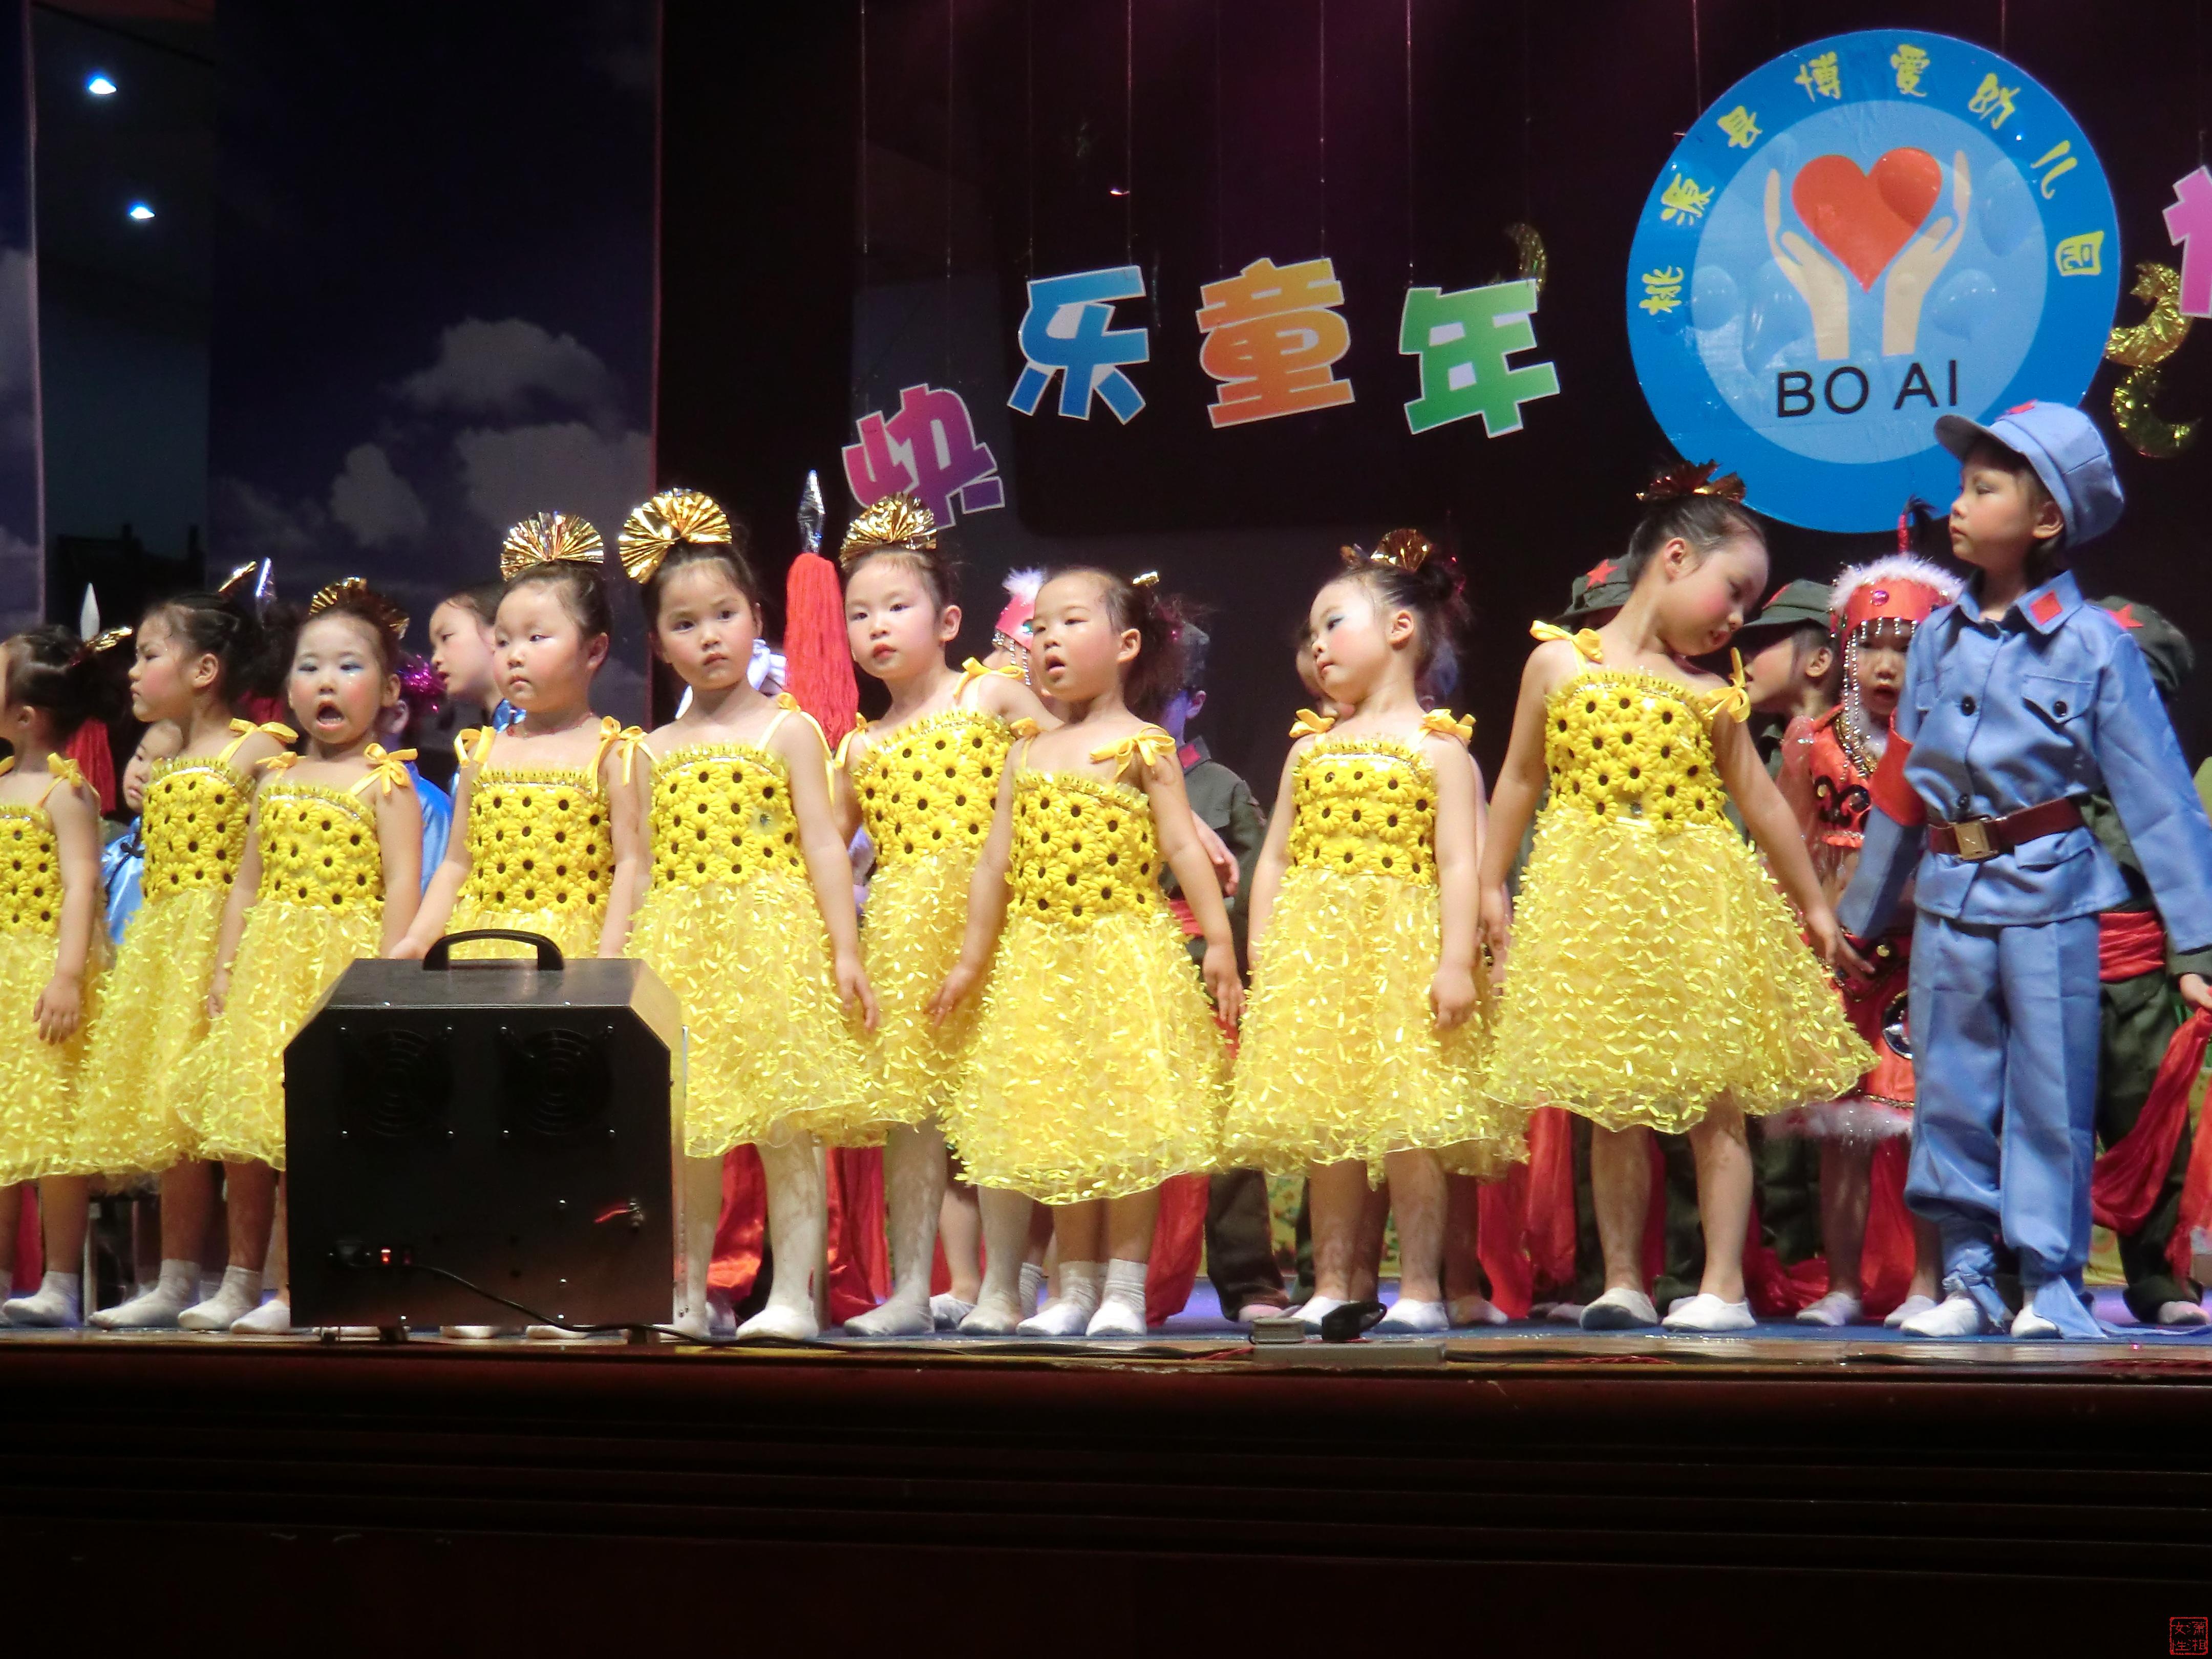 县城博爱幼儿园的小朋友正在表演节目